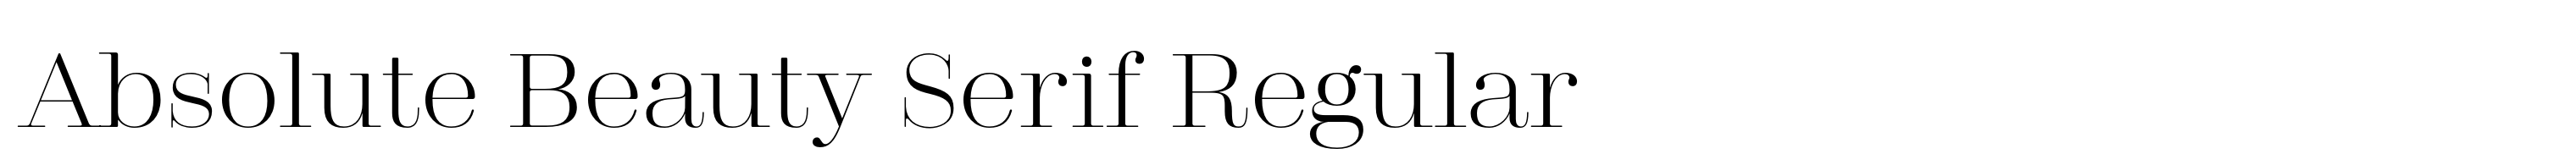 Absolute Beauty Serif Regular